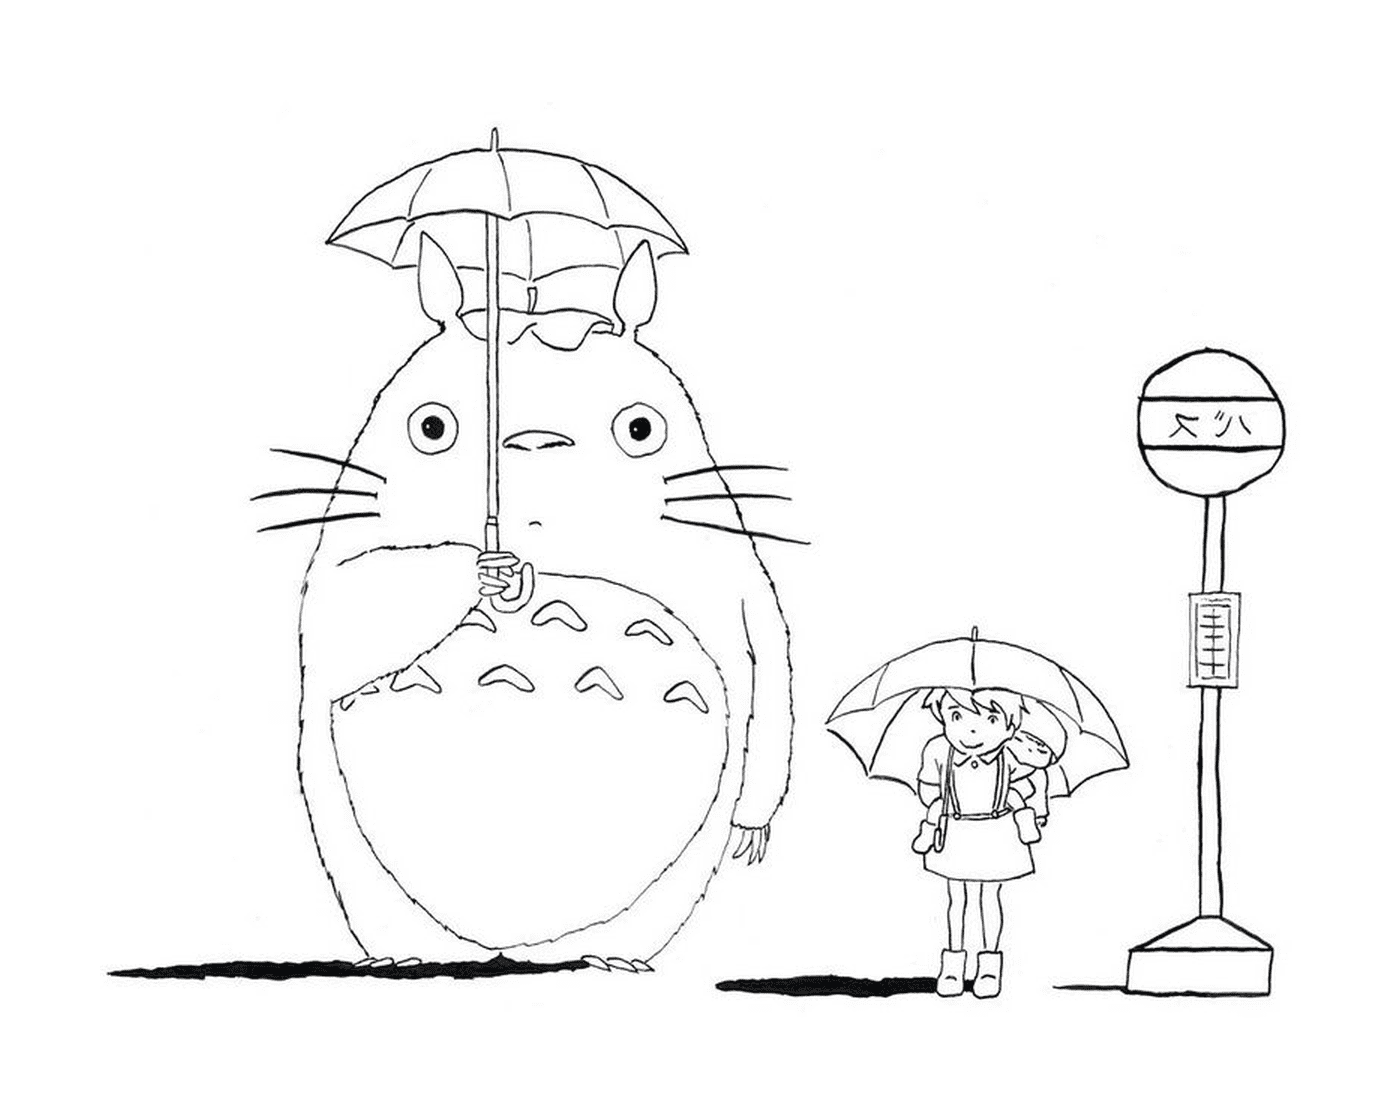  Totoro e una ragazza in attesa dell'autobus sotto la pioggia 